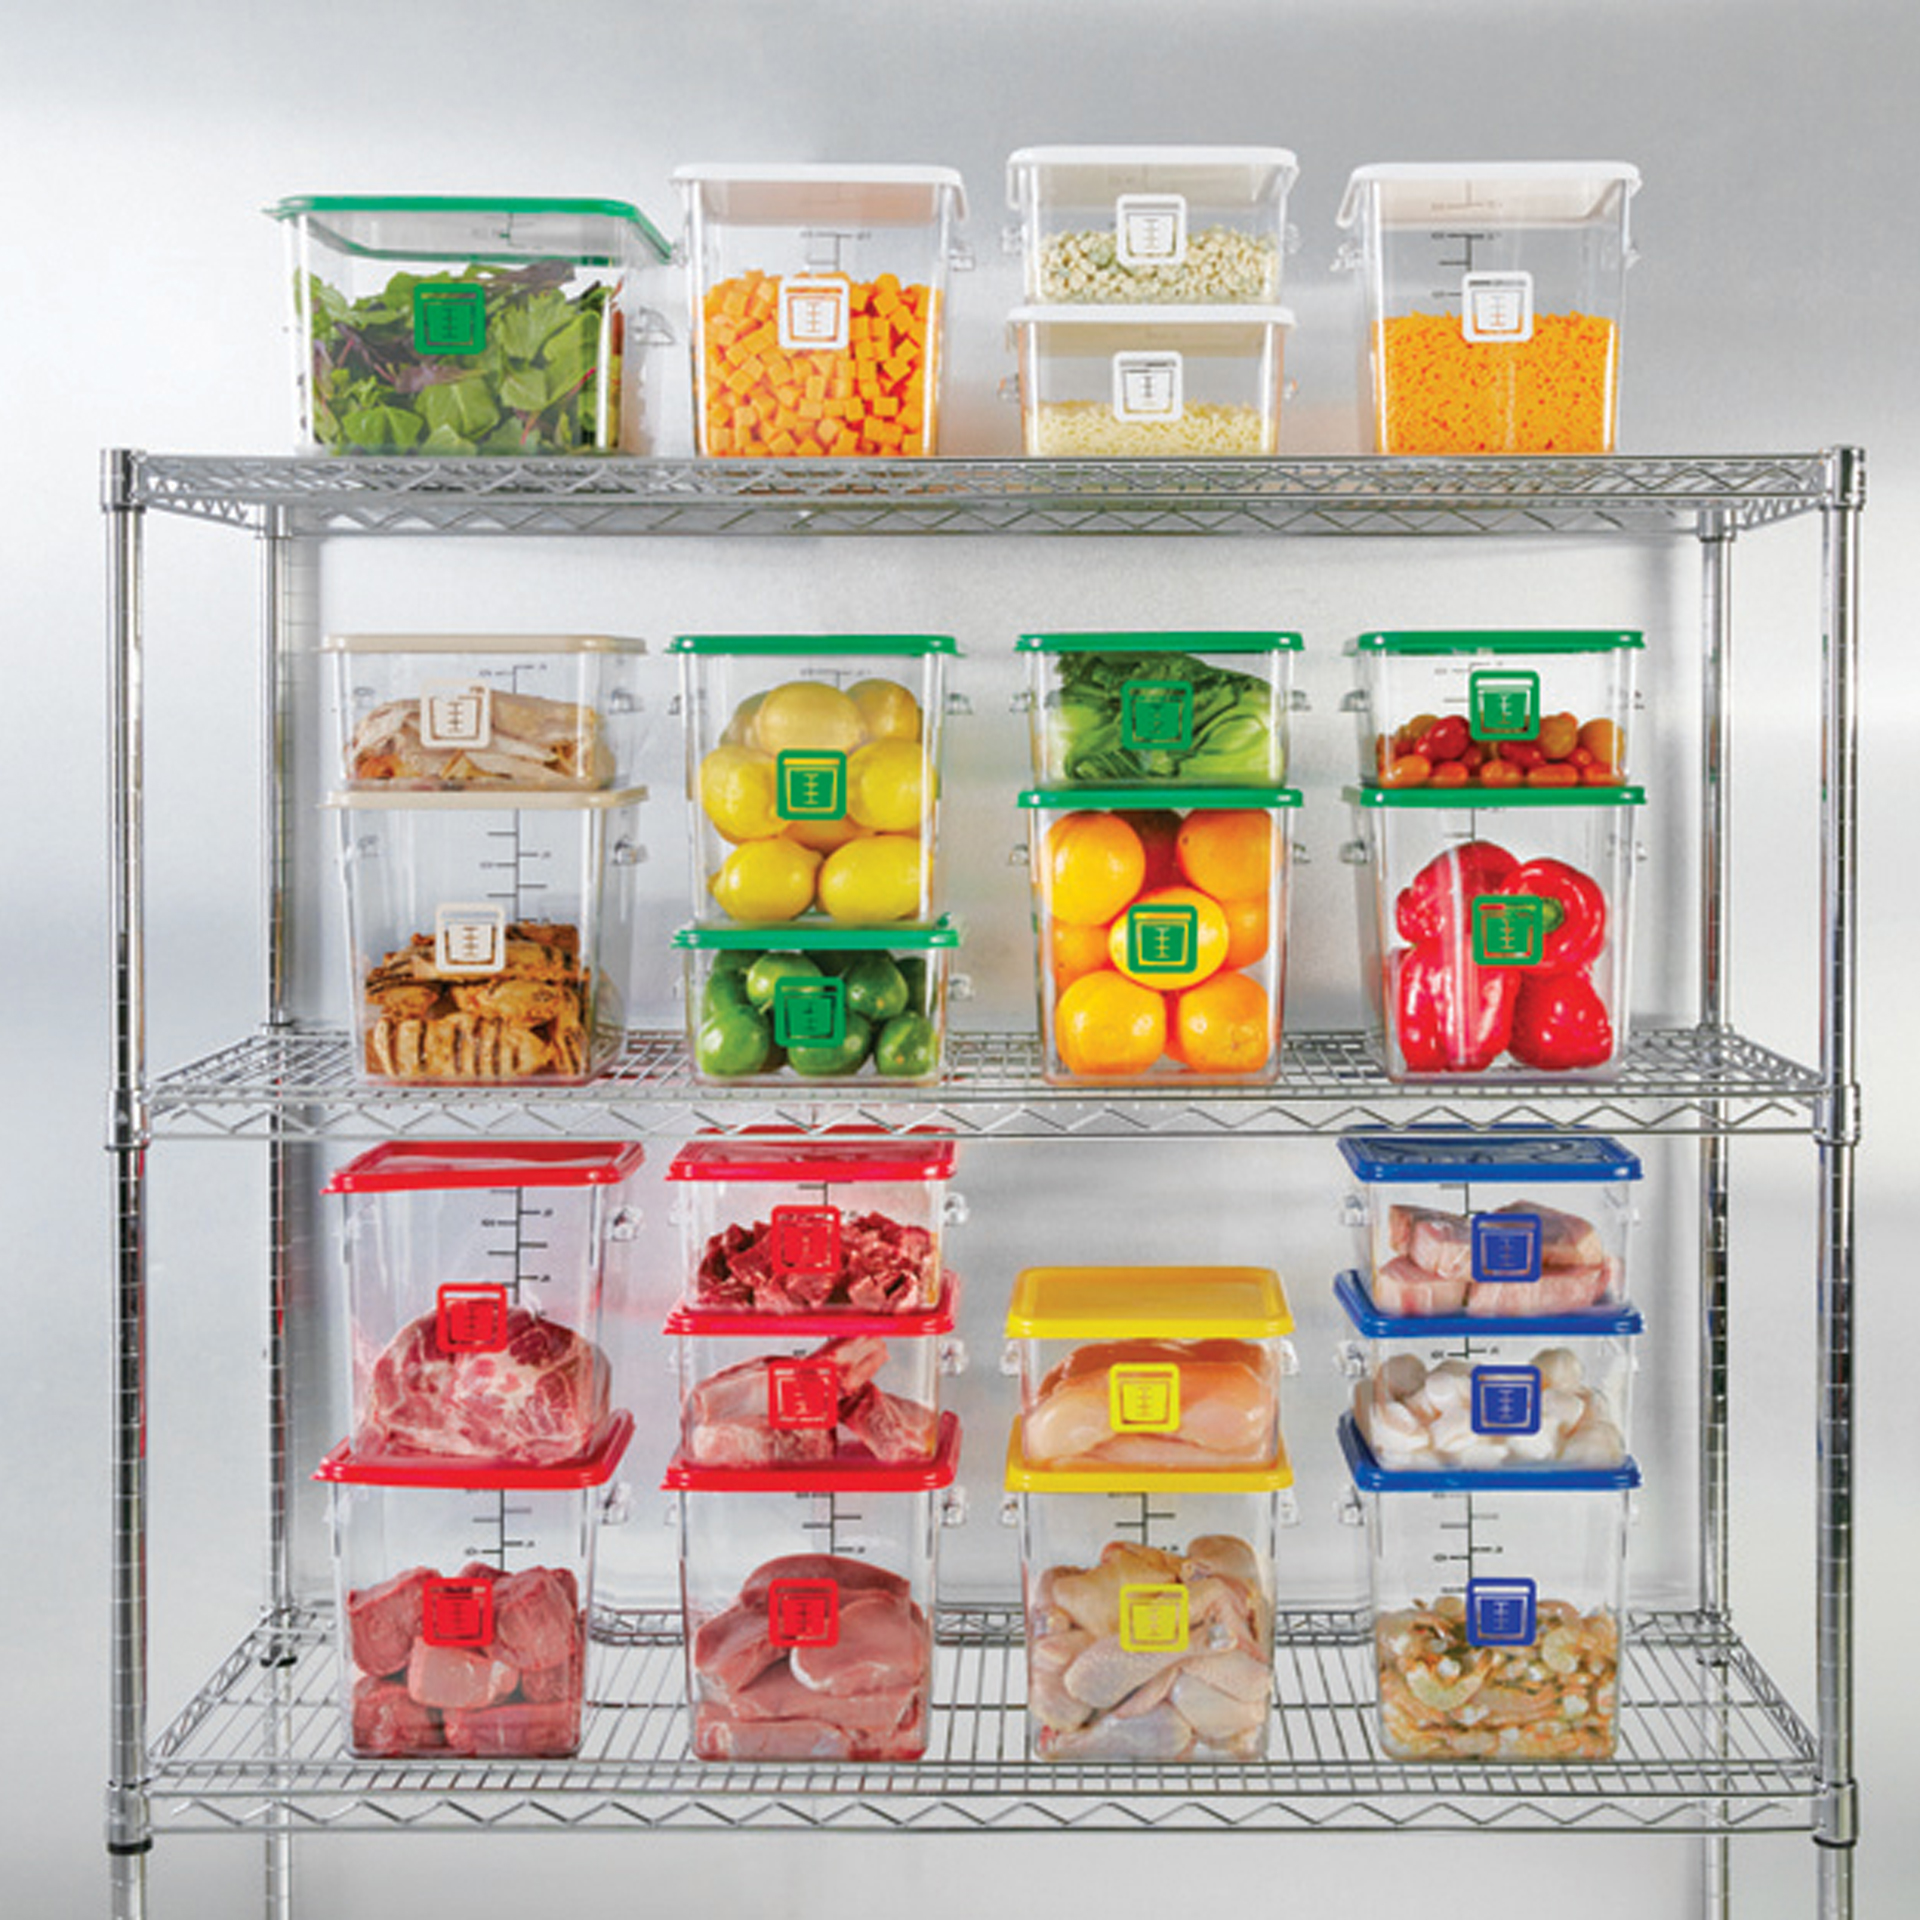 กล่องเก็บวัตถุดิบอาหารสี่เหลี่ยม Color-Coded Square Container Clear ขนาด 4 qt สีม่วง